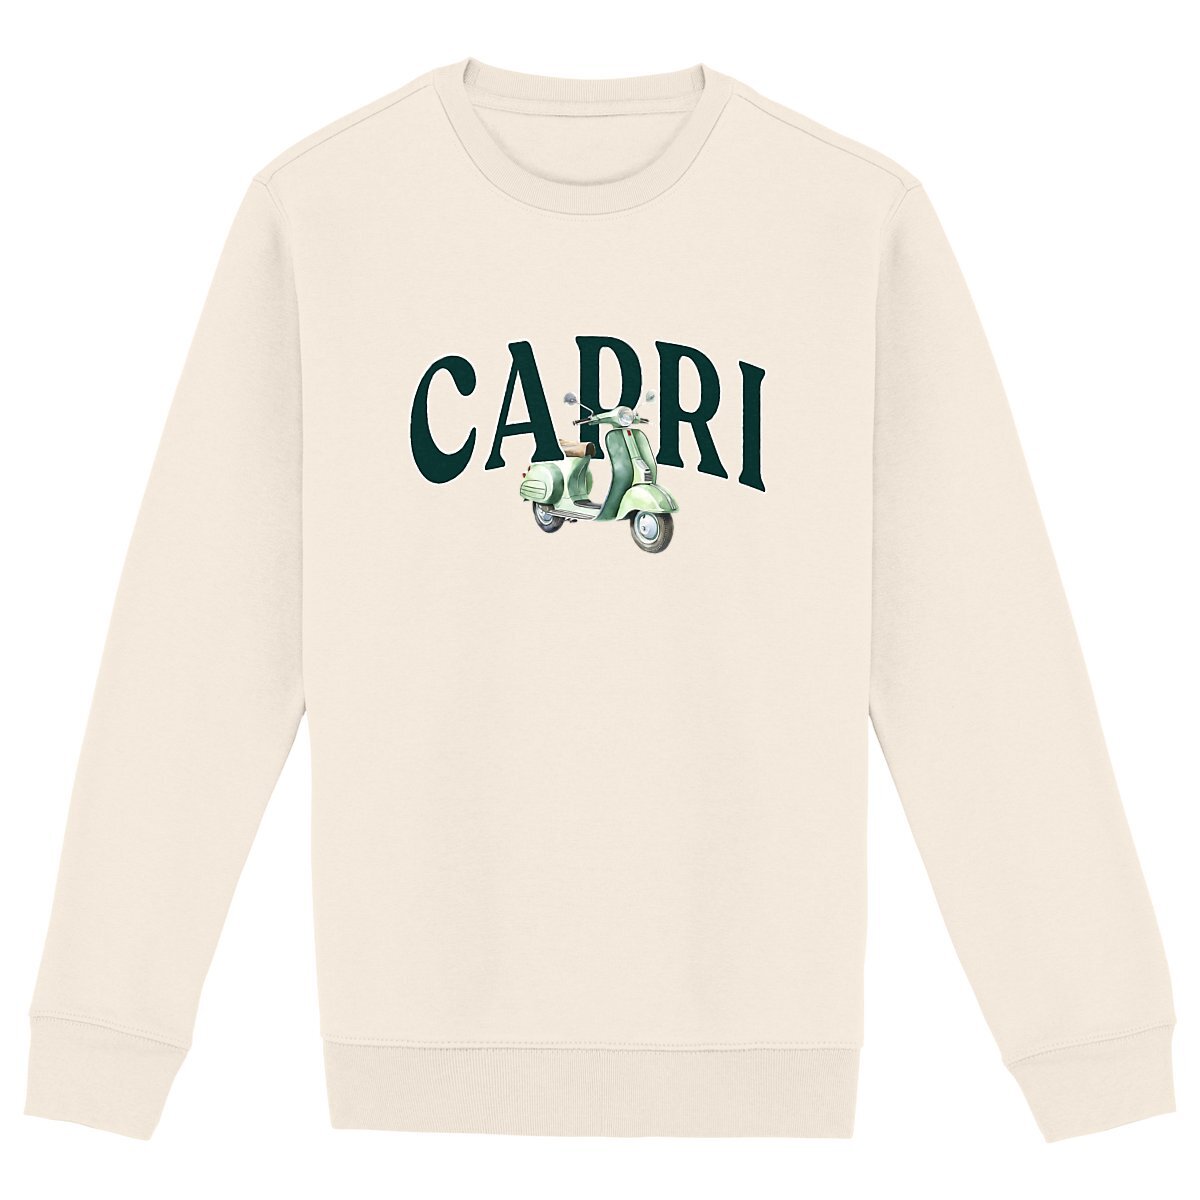 Capri - Organic Sweatshirt - The Refined Spirit